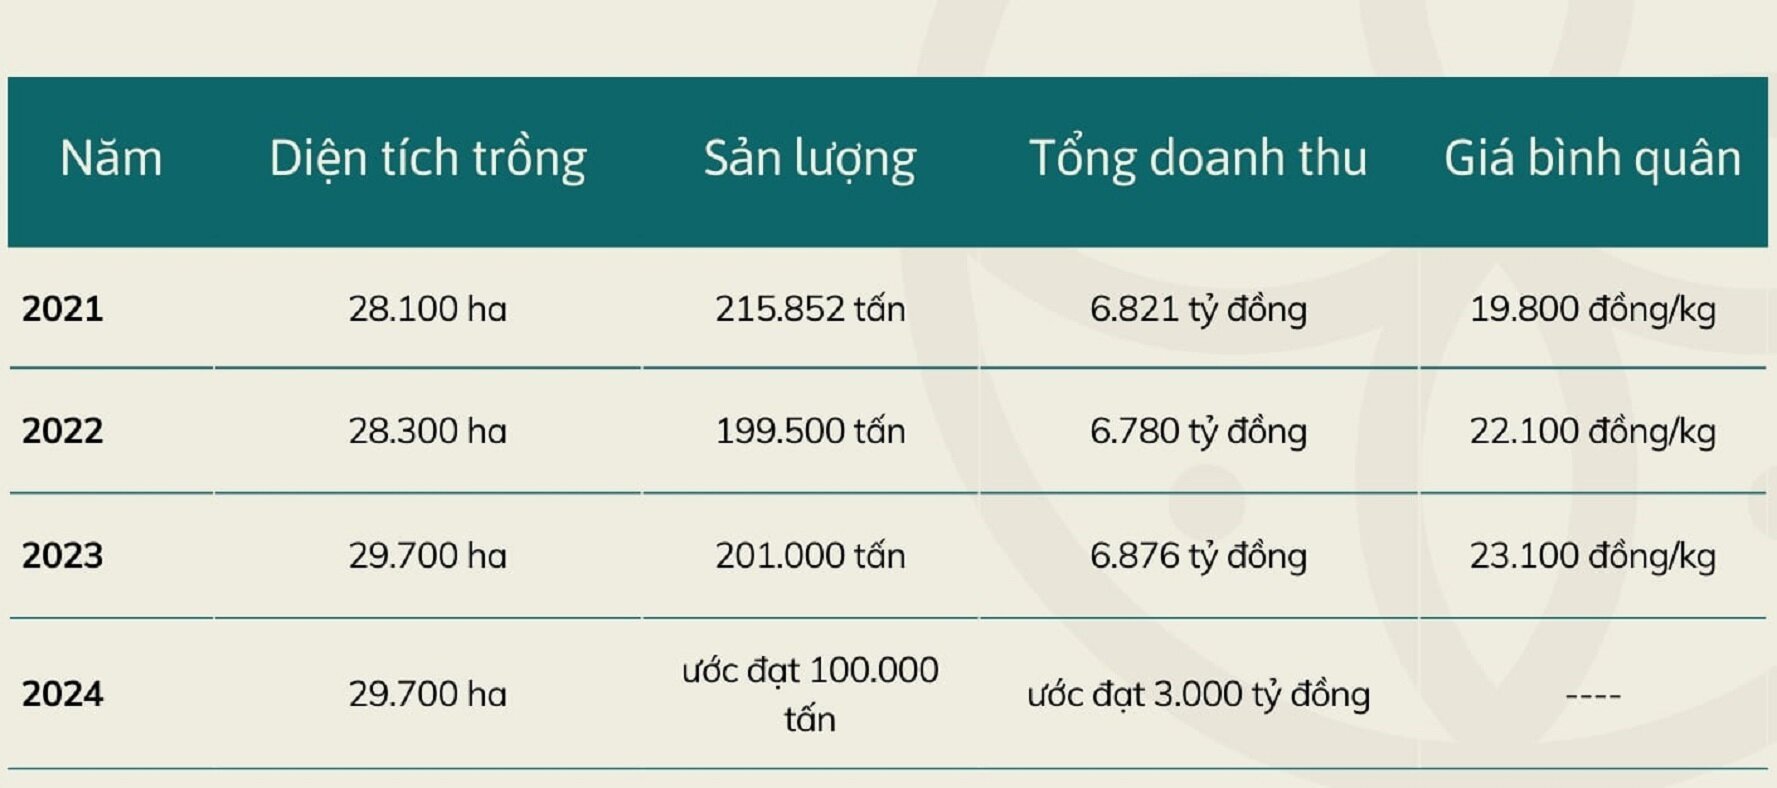 Mùa vải buồn ở Bắc Giang, mất nghìn tỷ đồng vì cây ‘chột’ hoa - 9